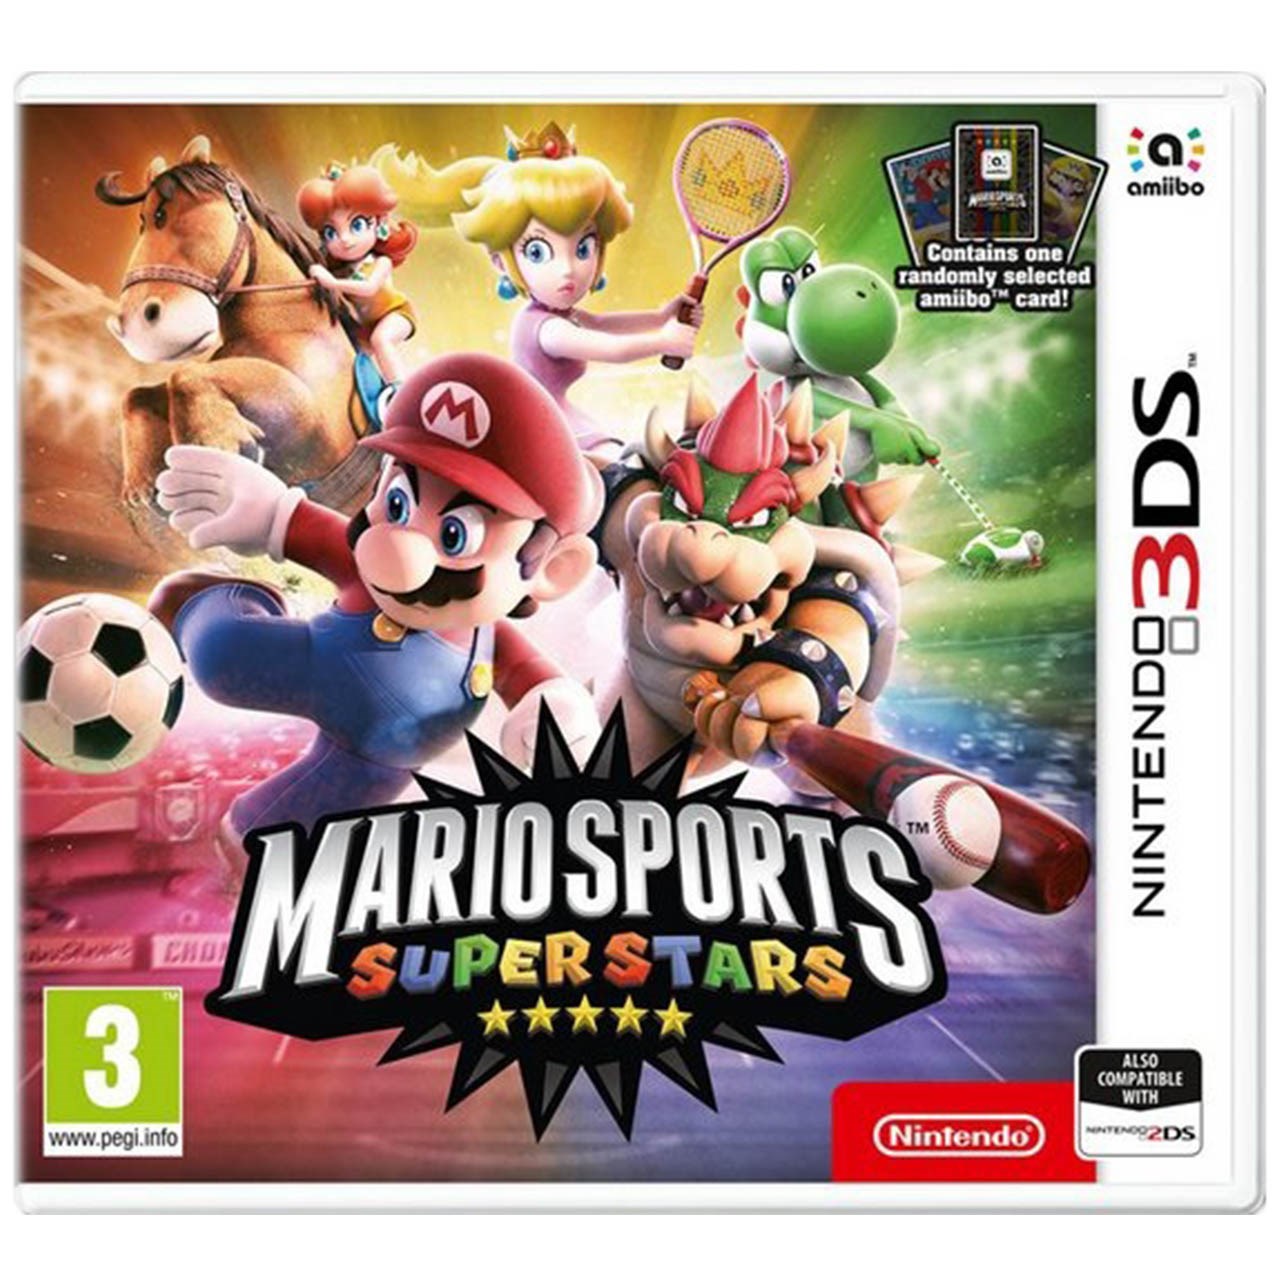 بازی Mario Sports Superstars مخصوص Nintendo 3DS 2DS